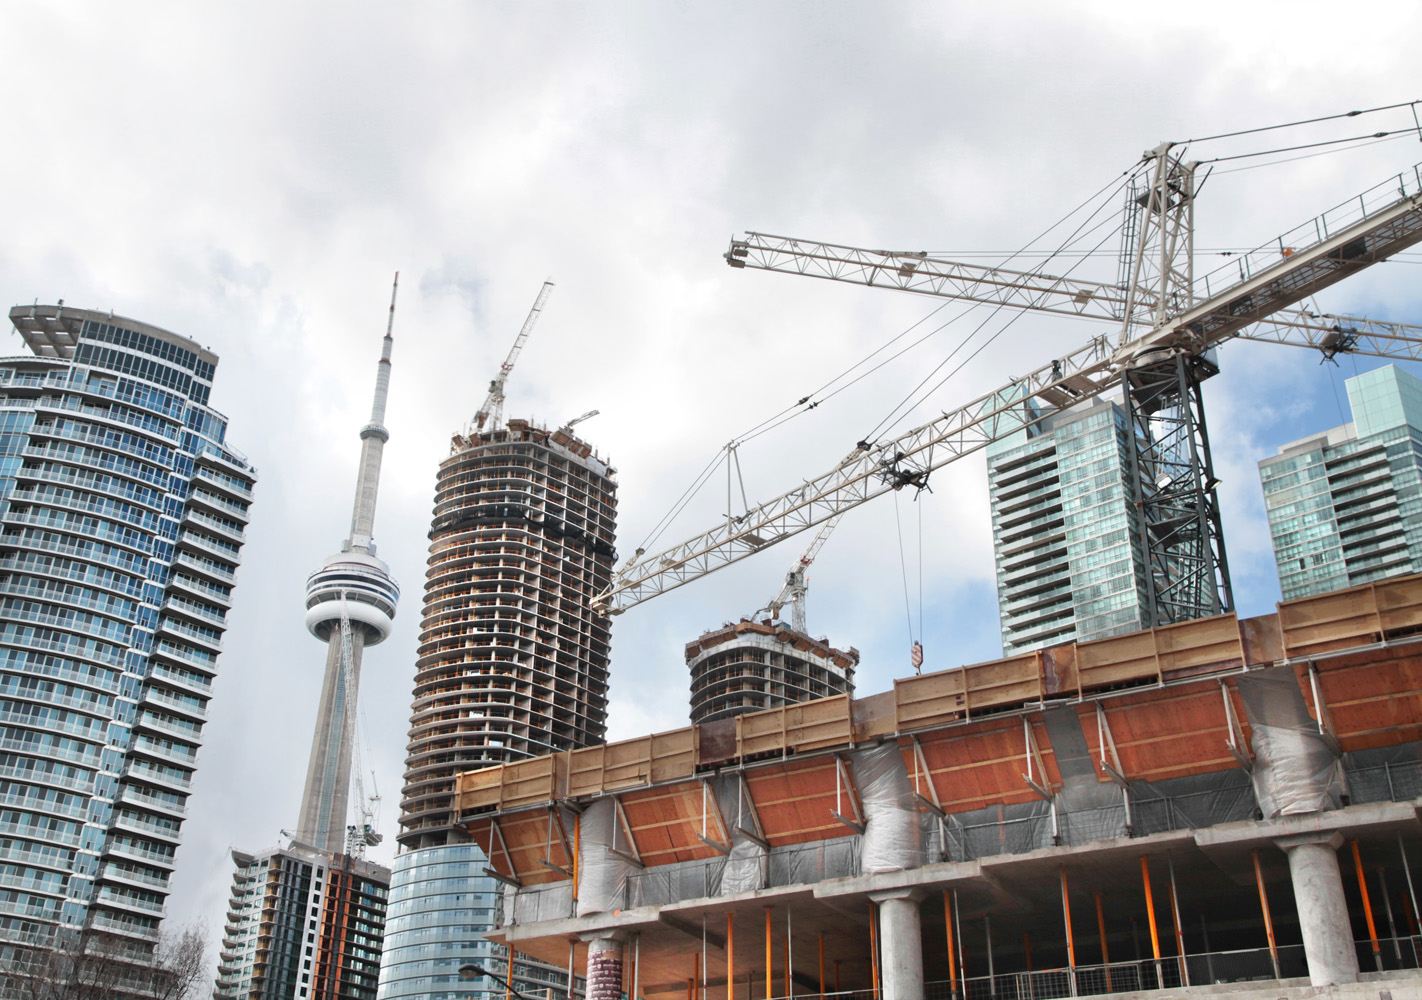 Building cranes dot the Toronto landscape.